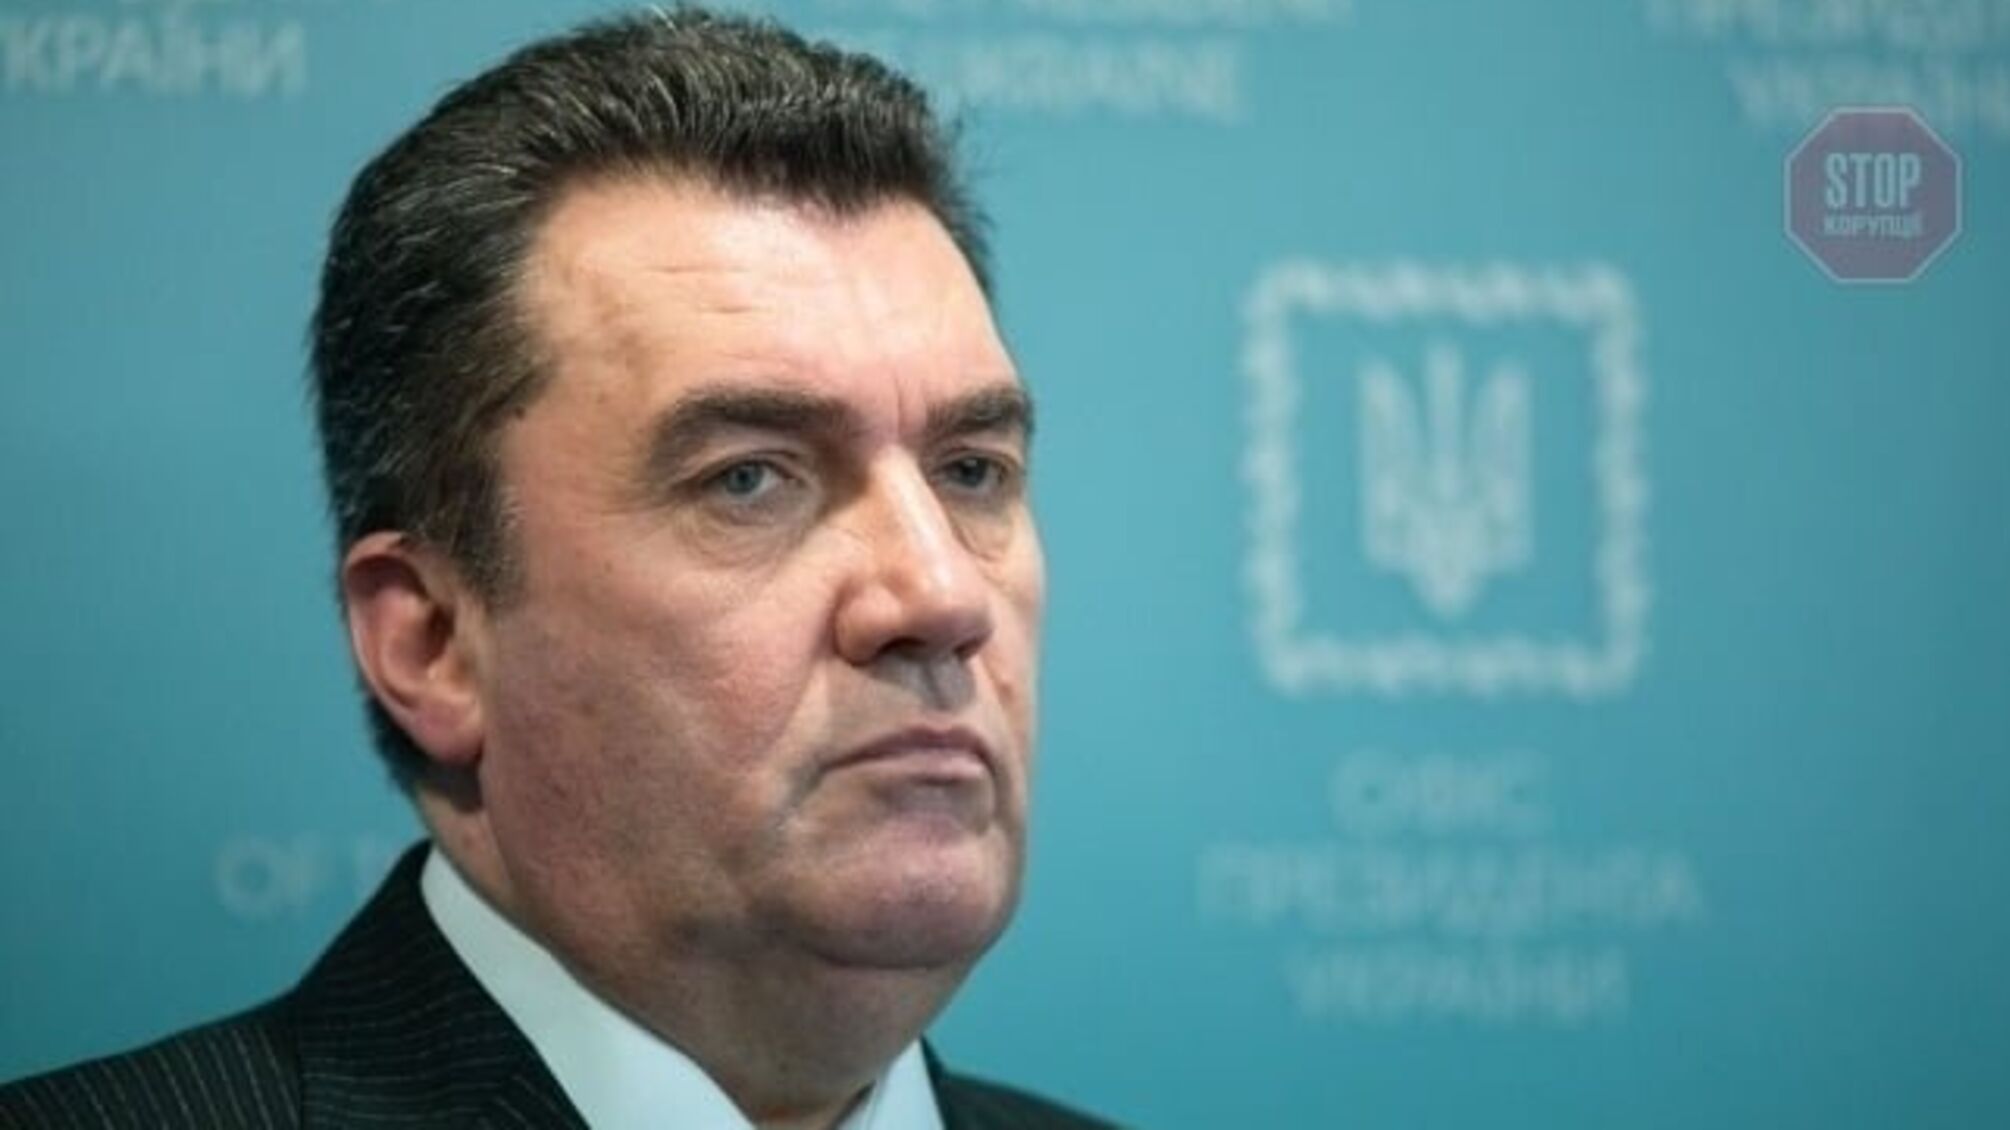 Секретарь СНБО Данилов назвал главный признак олигархов